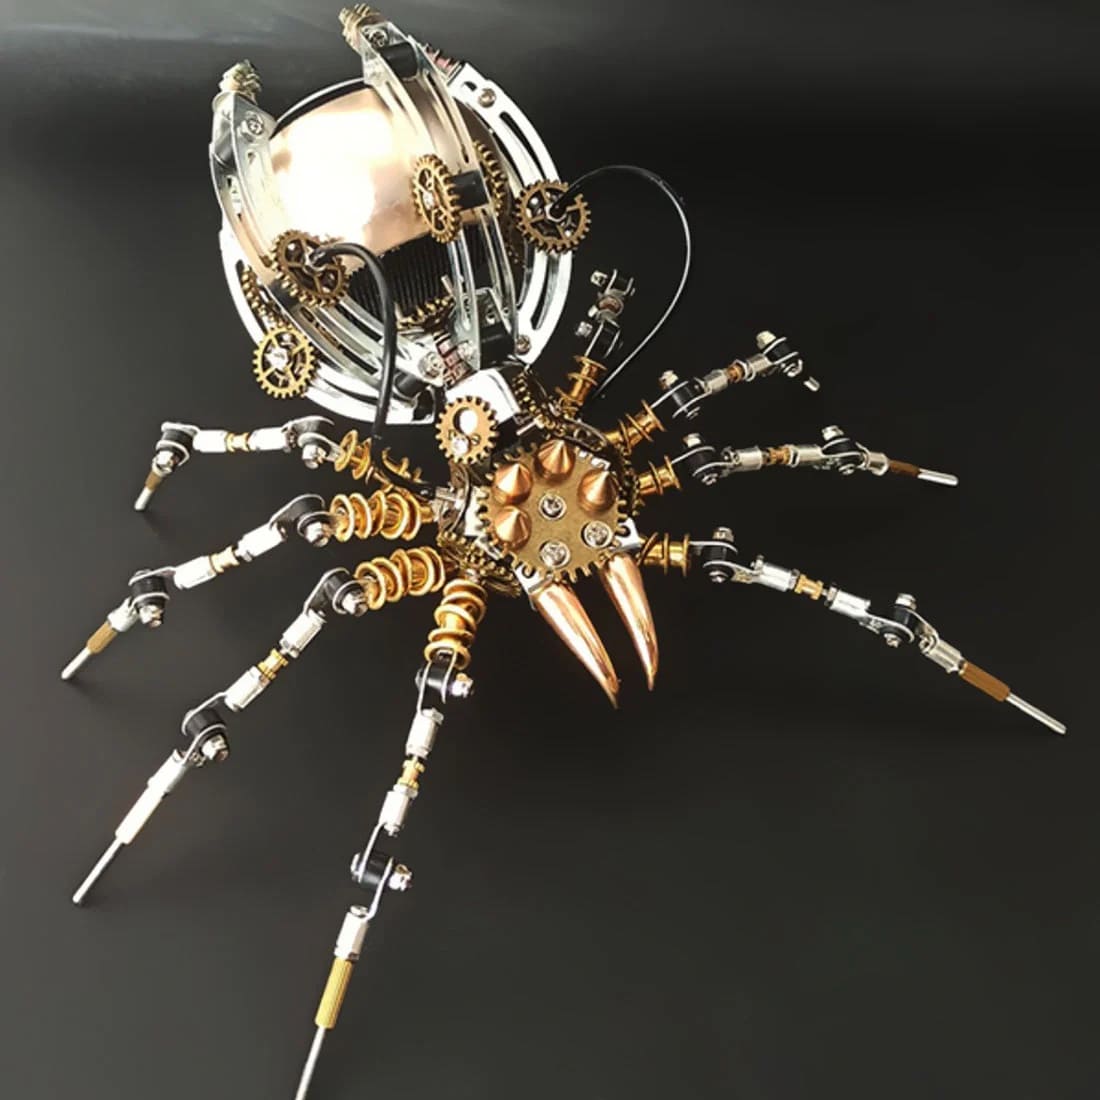 3D spider model + bluetooth højttaler